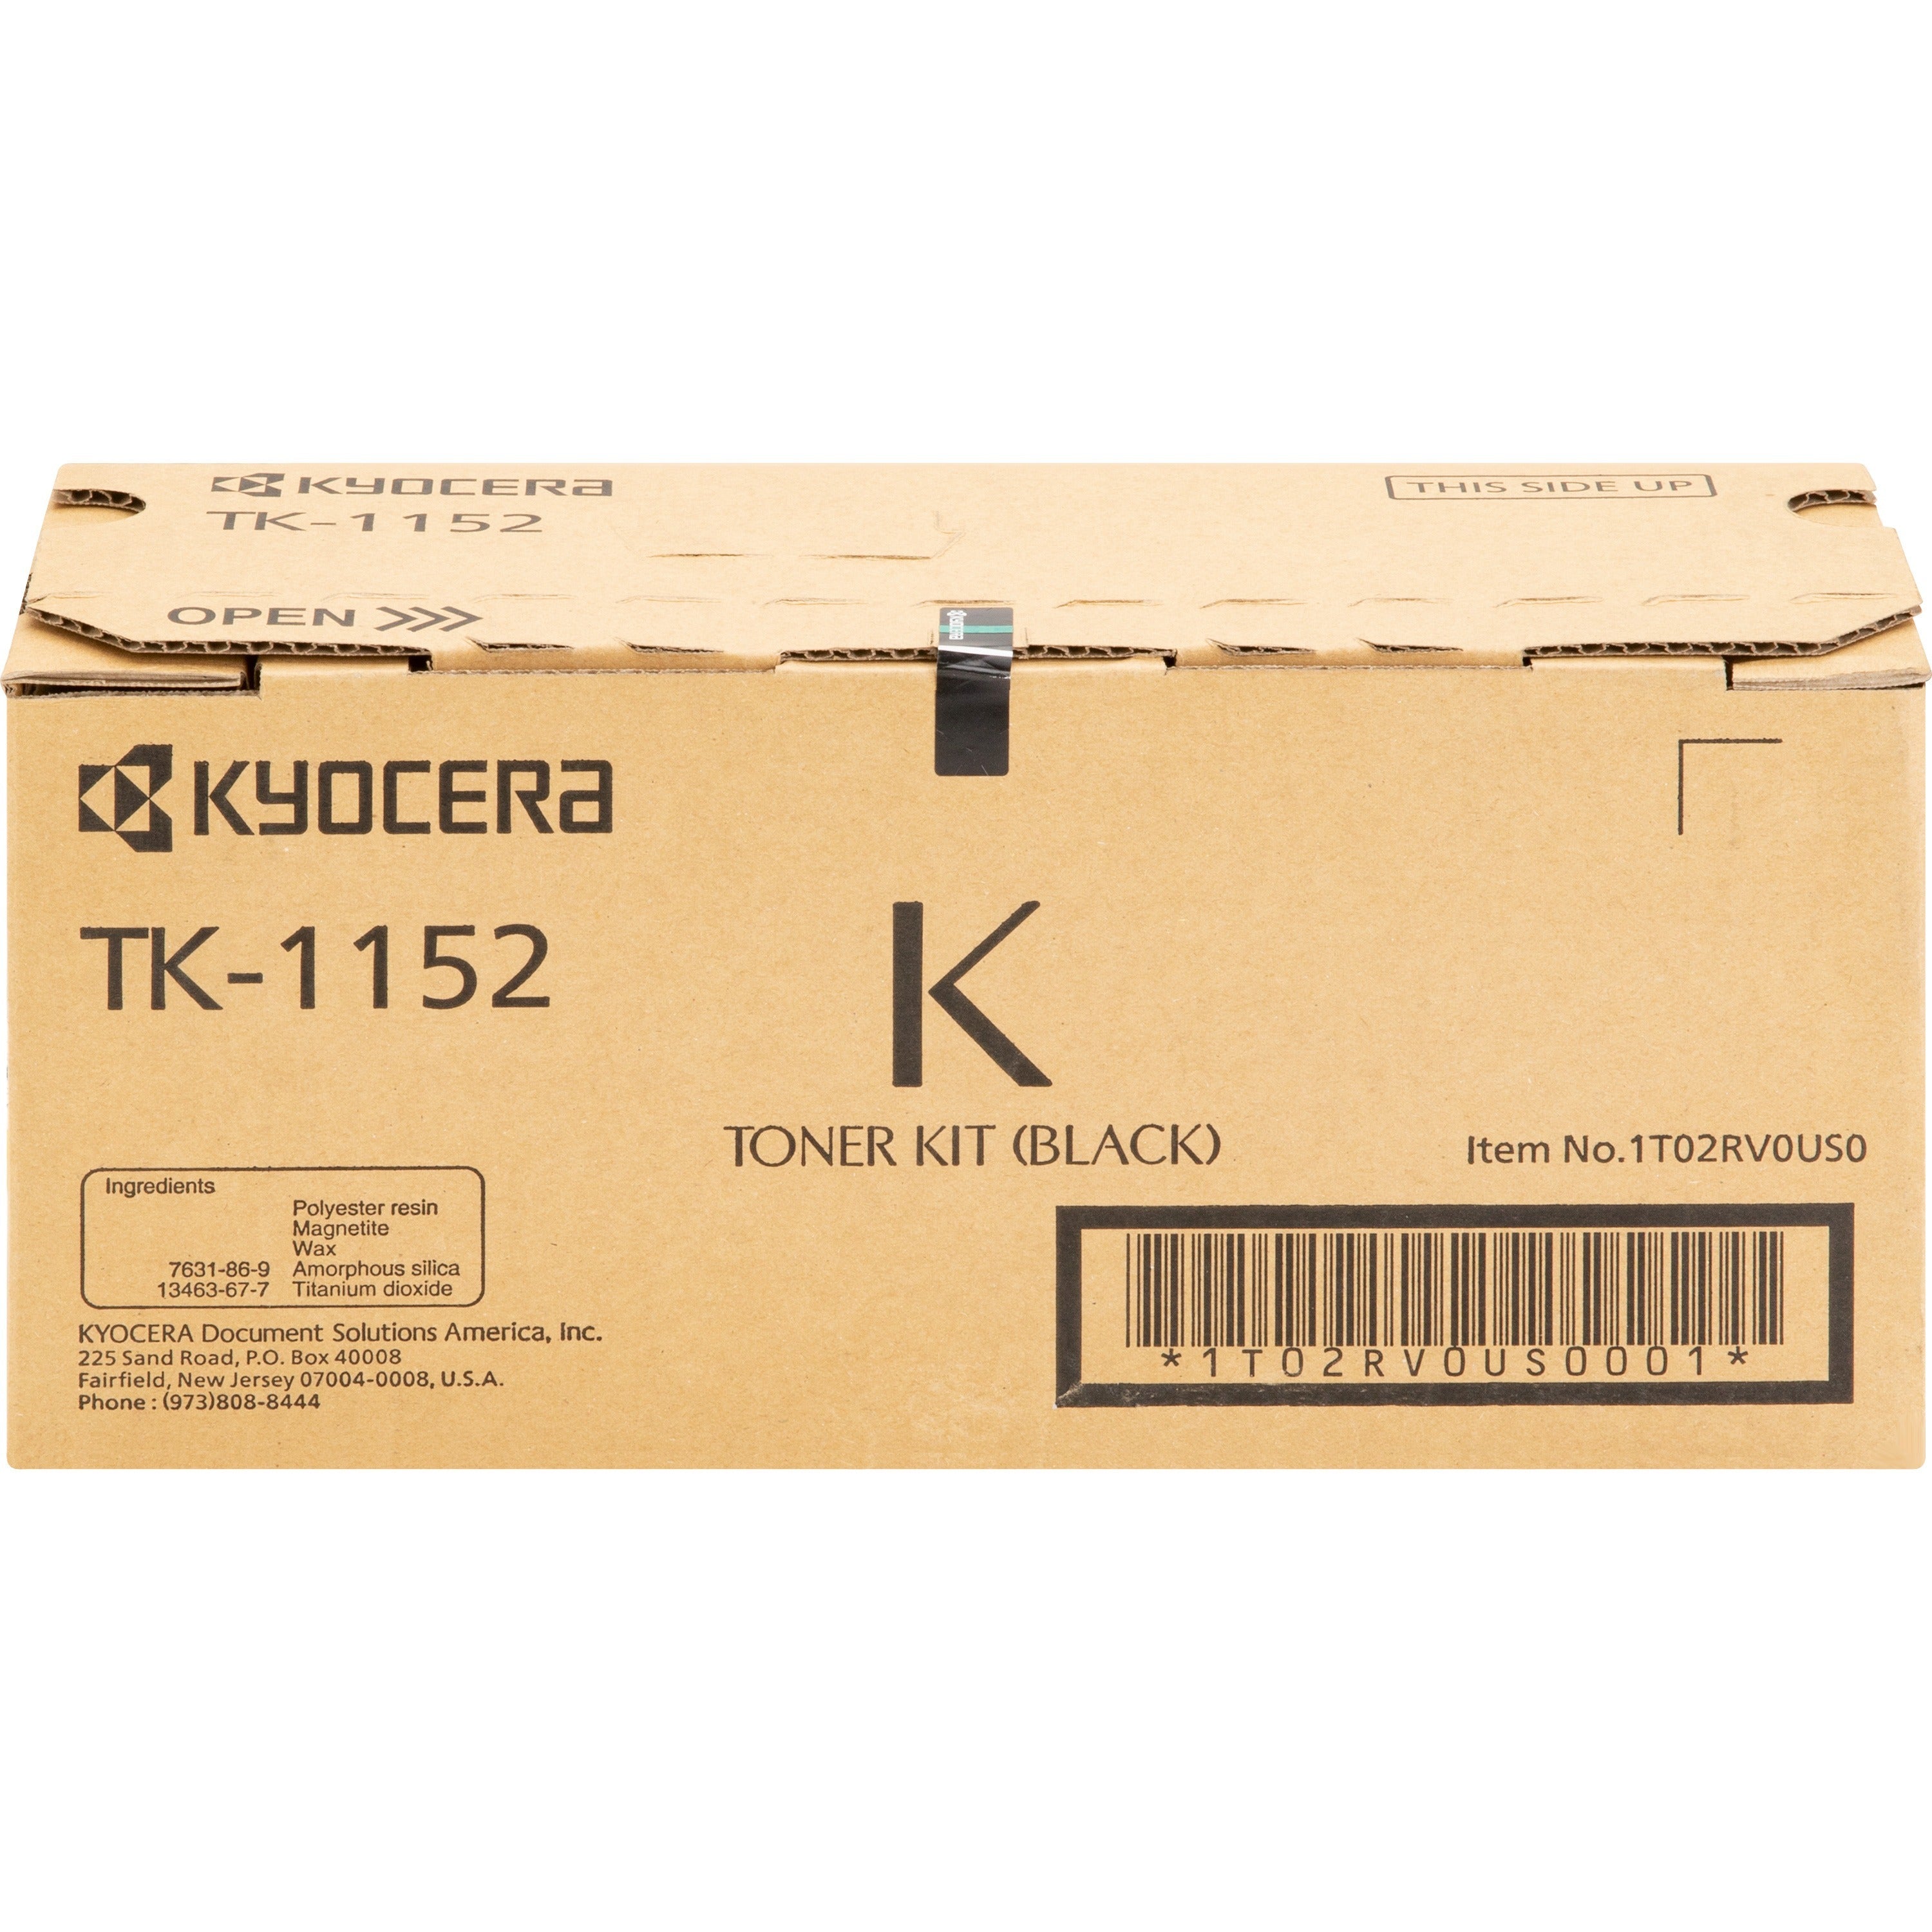 Kyocera TK-1152 Original Laser Toner Cartridge - Black - 1 Each - 3000 Pages